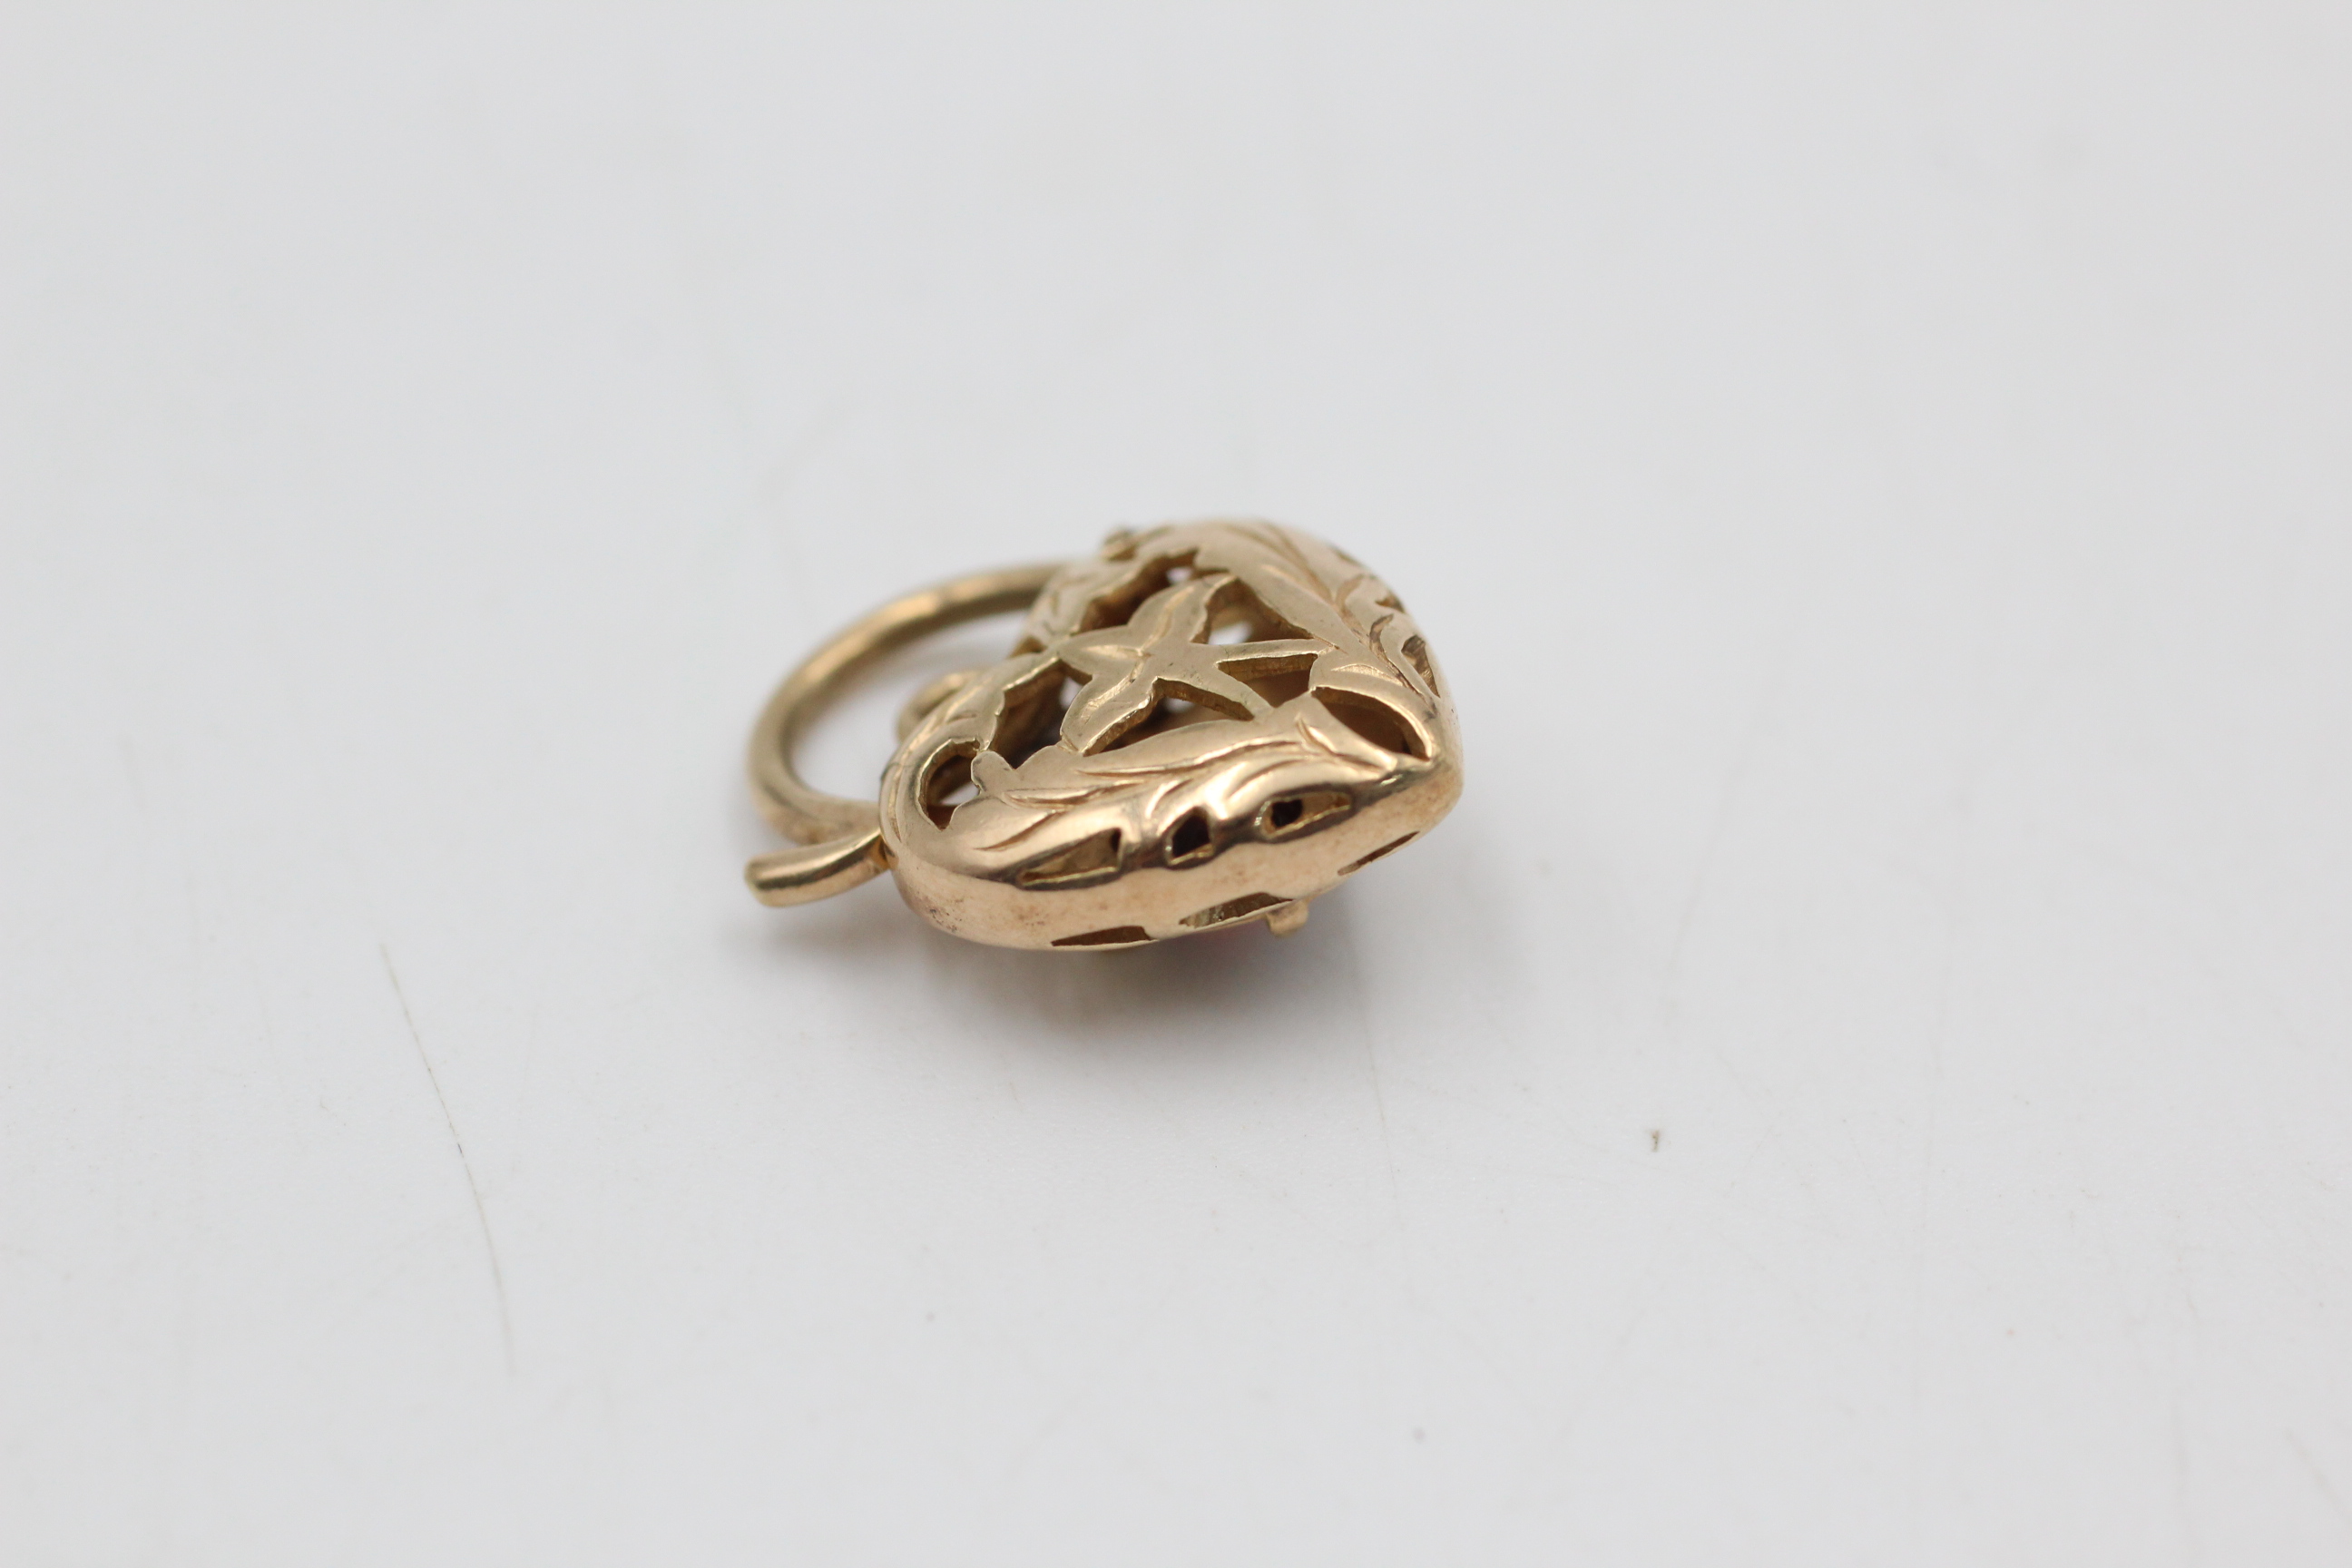 9ct gold garnet ornate heart lock pendant (2.8g) - Image 2 of 4